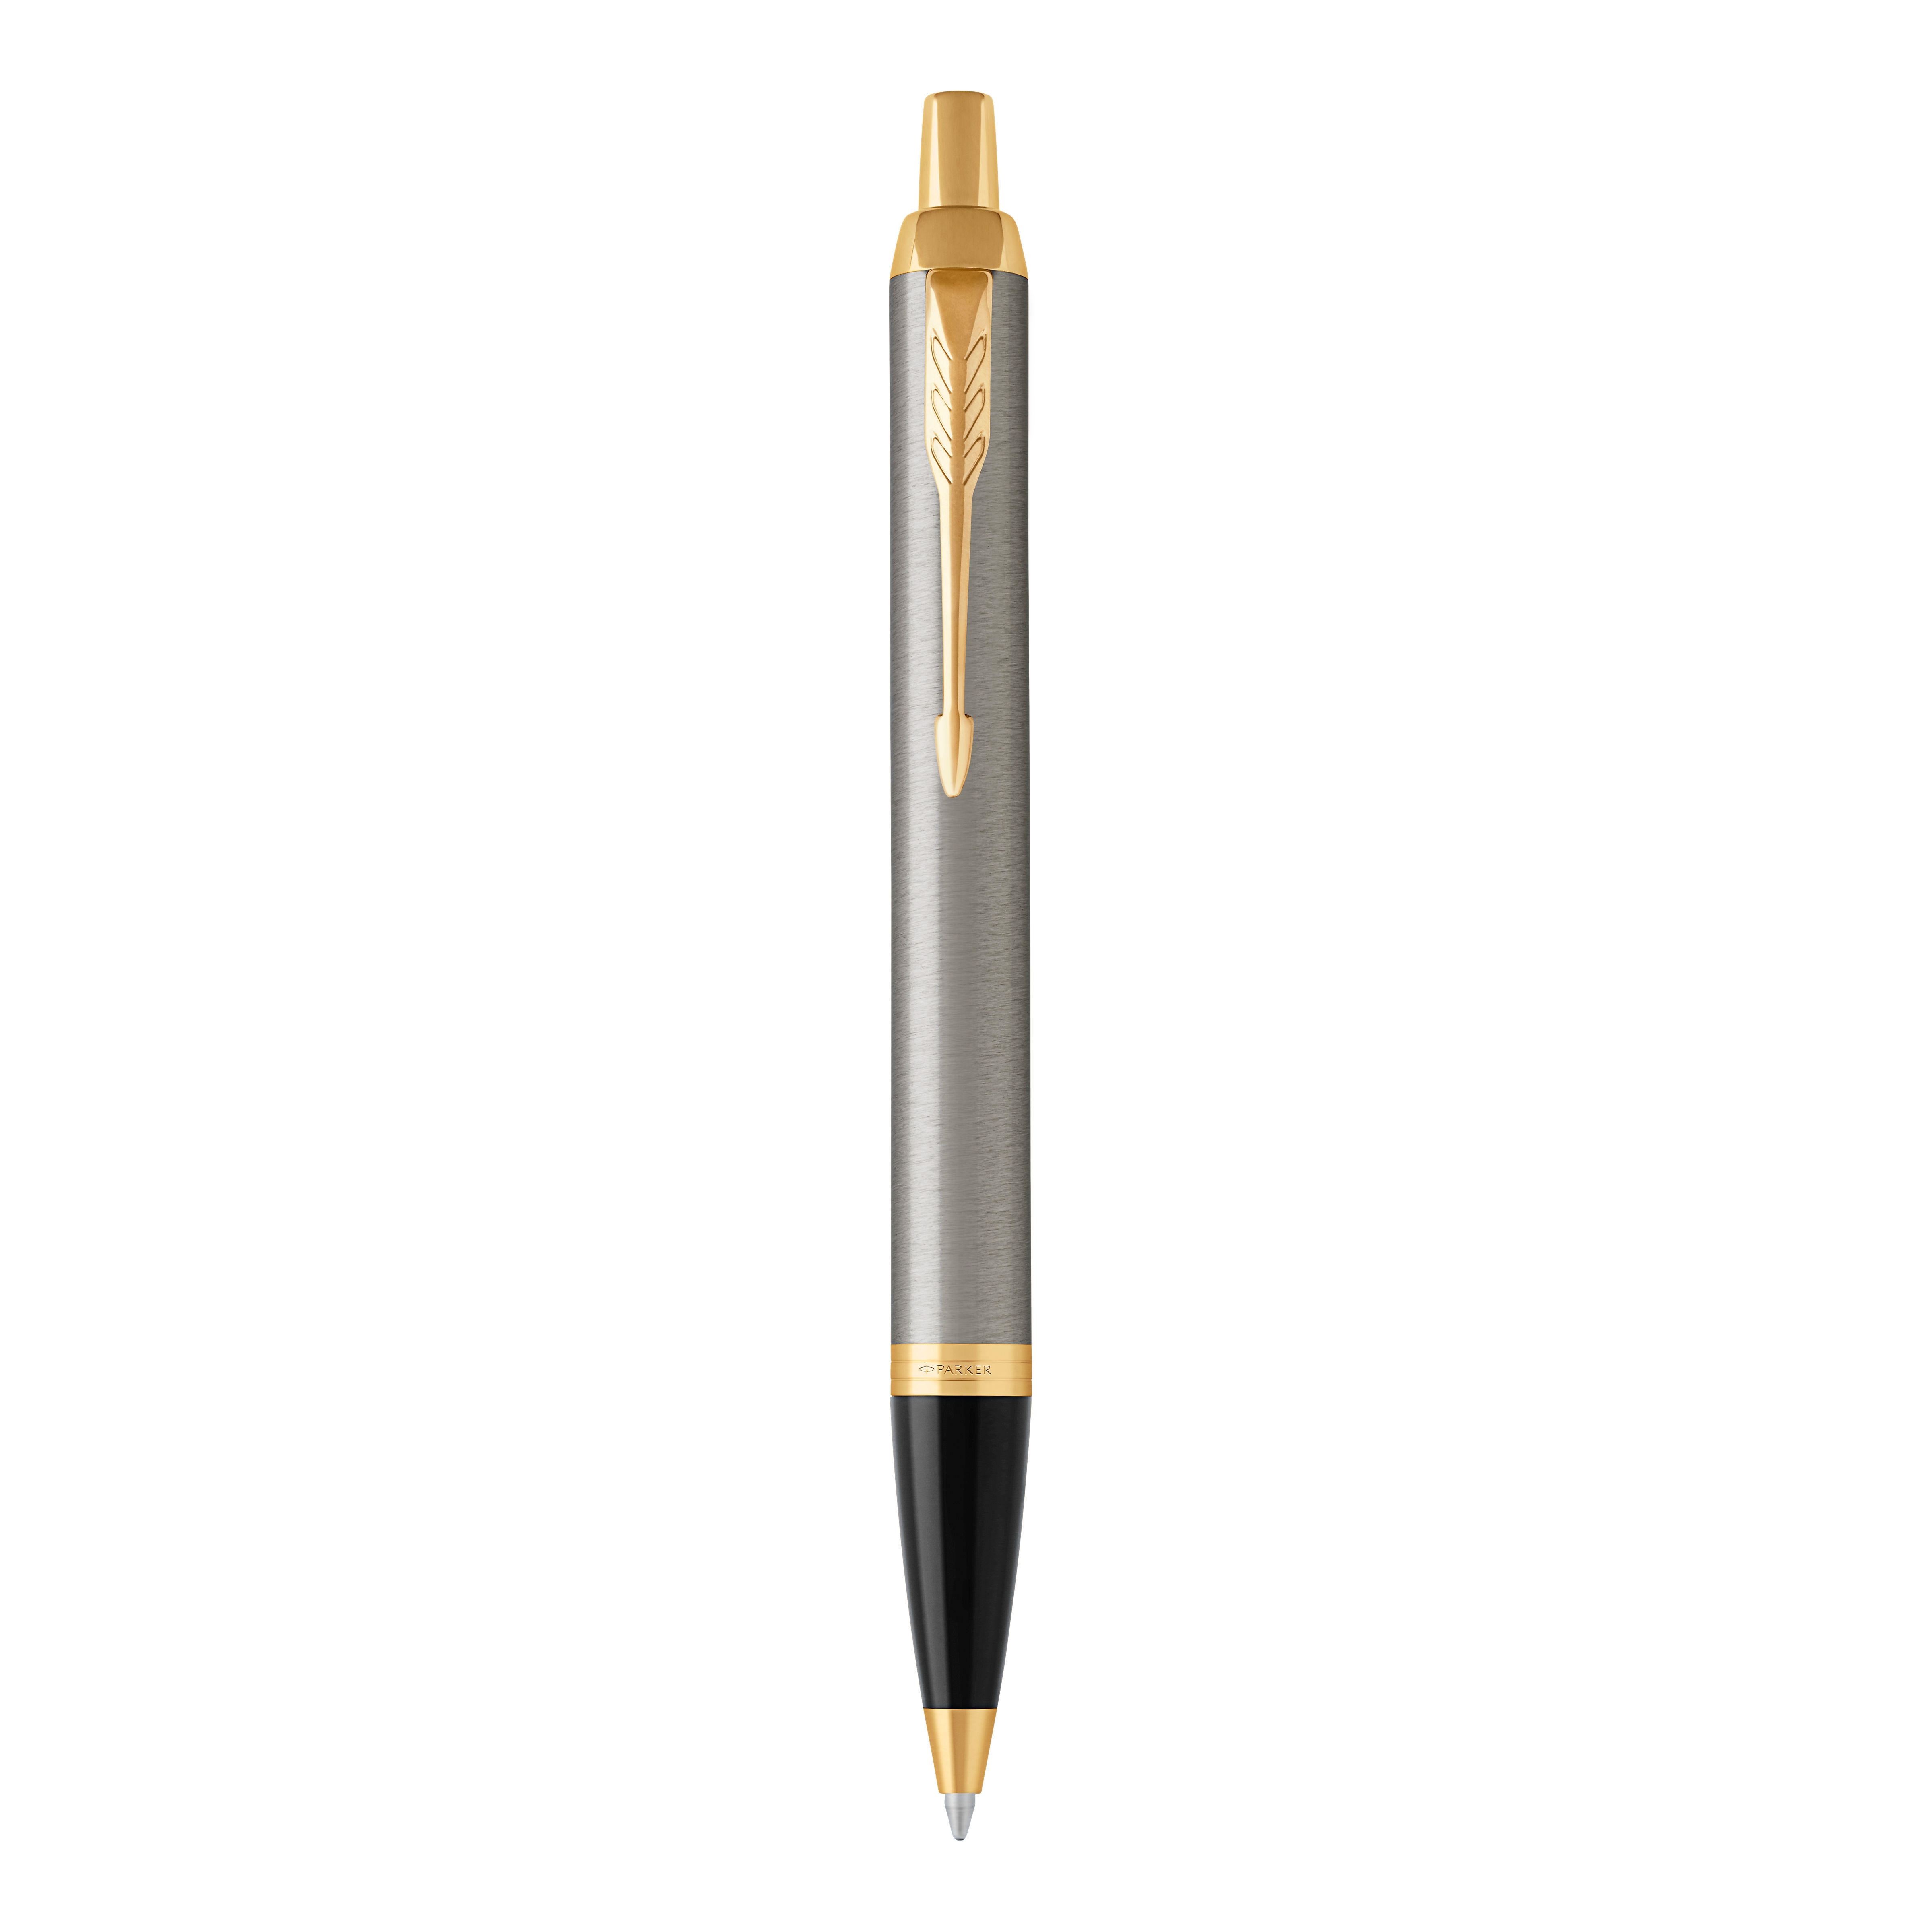 Kuličkové pero Parker Royal IM, broušené tělo, zlatý klip, 0,7 mm, modrý inkoust